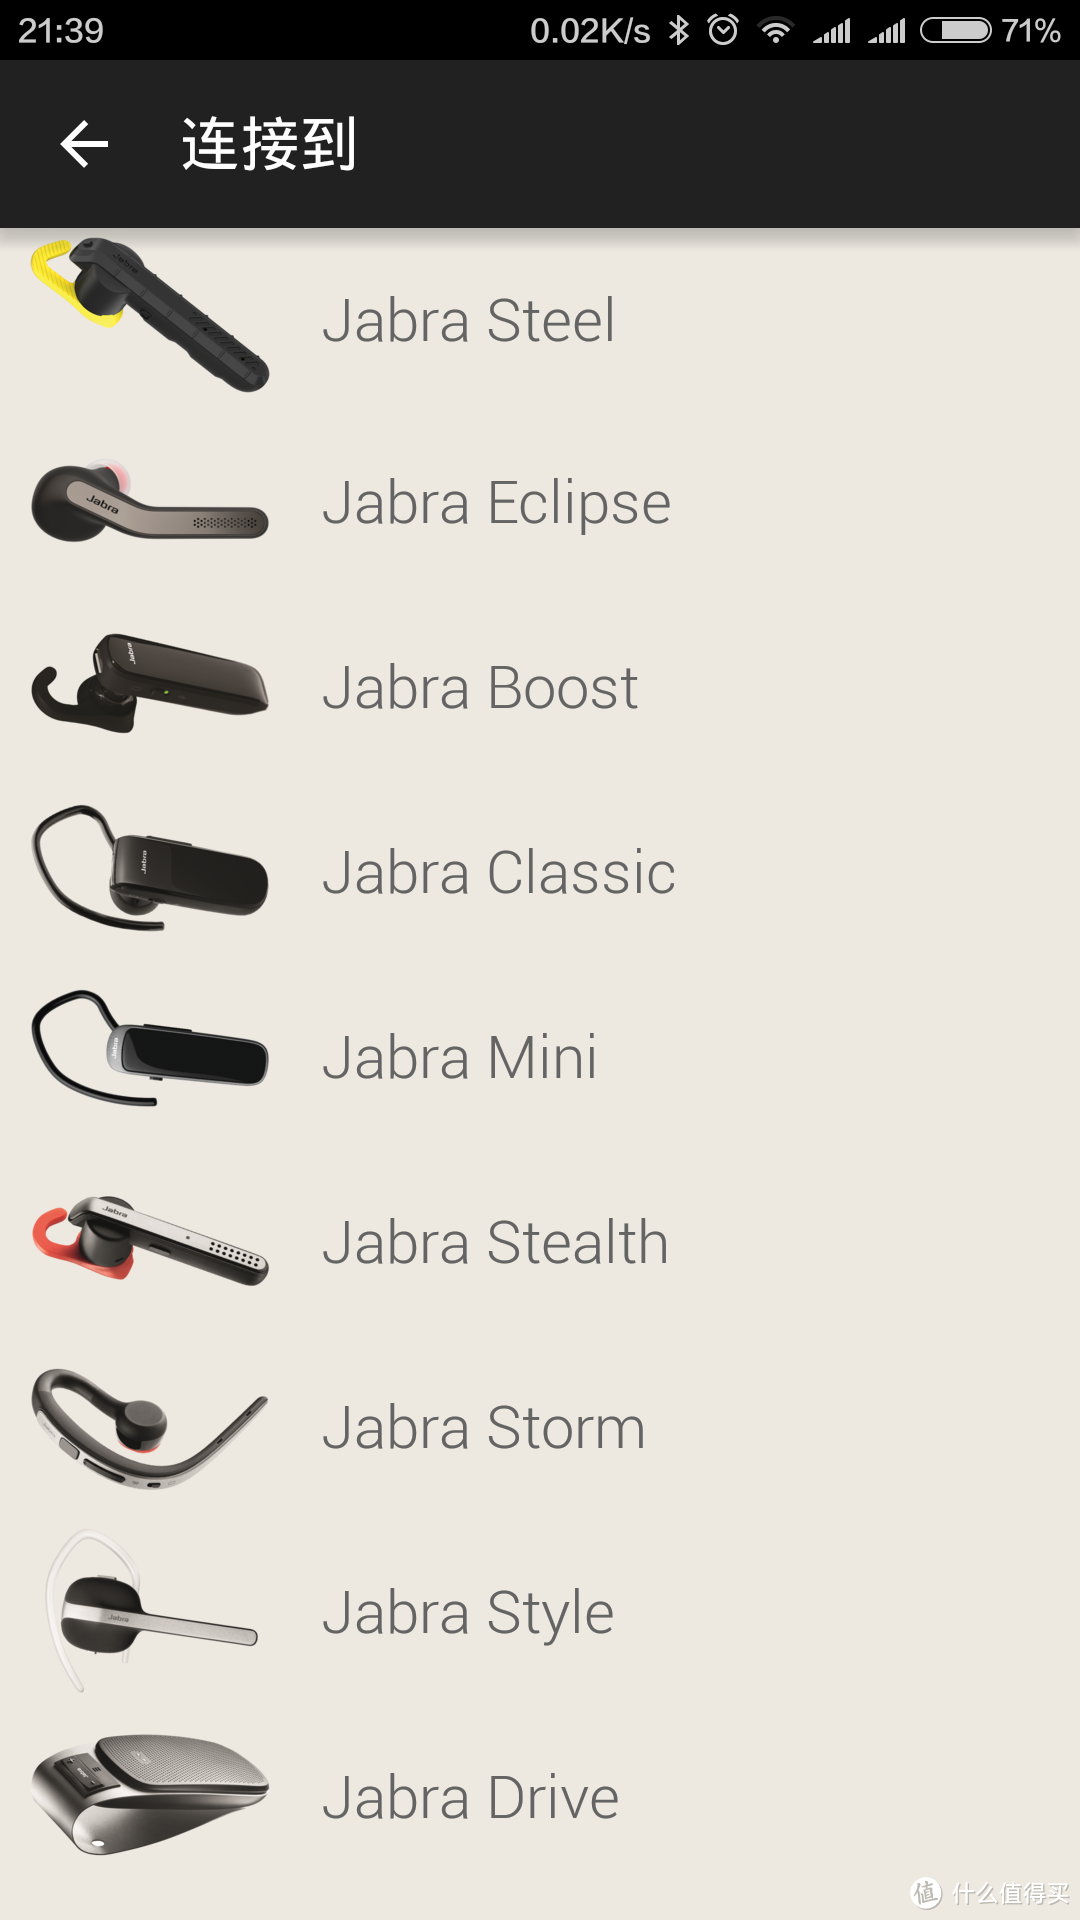 革命尚未成功——Jabra 捷波朗 Eclipse 智能通话蓝牙耳机全平台测试